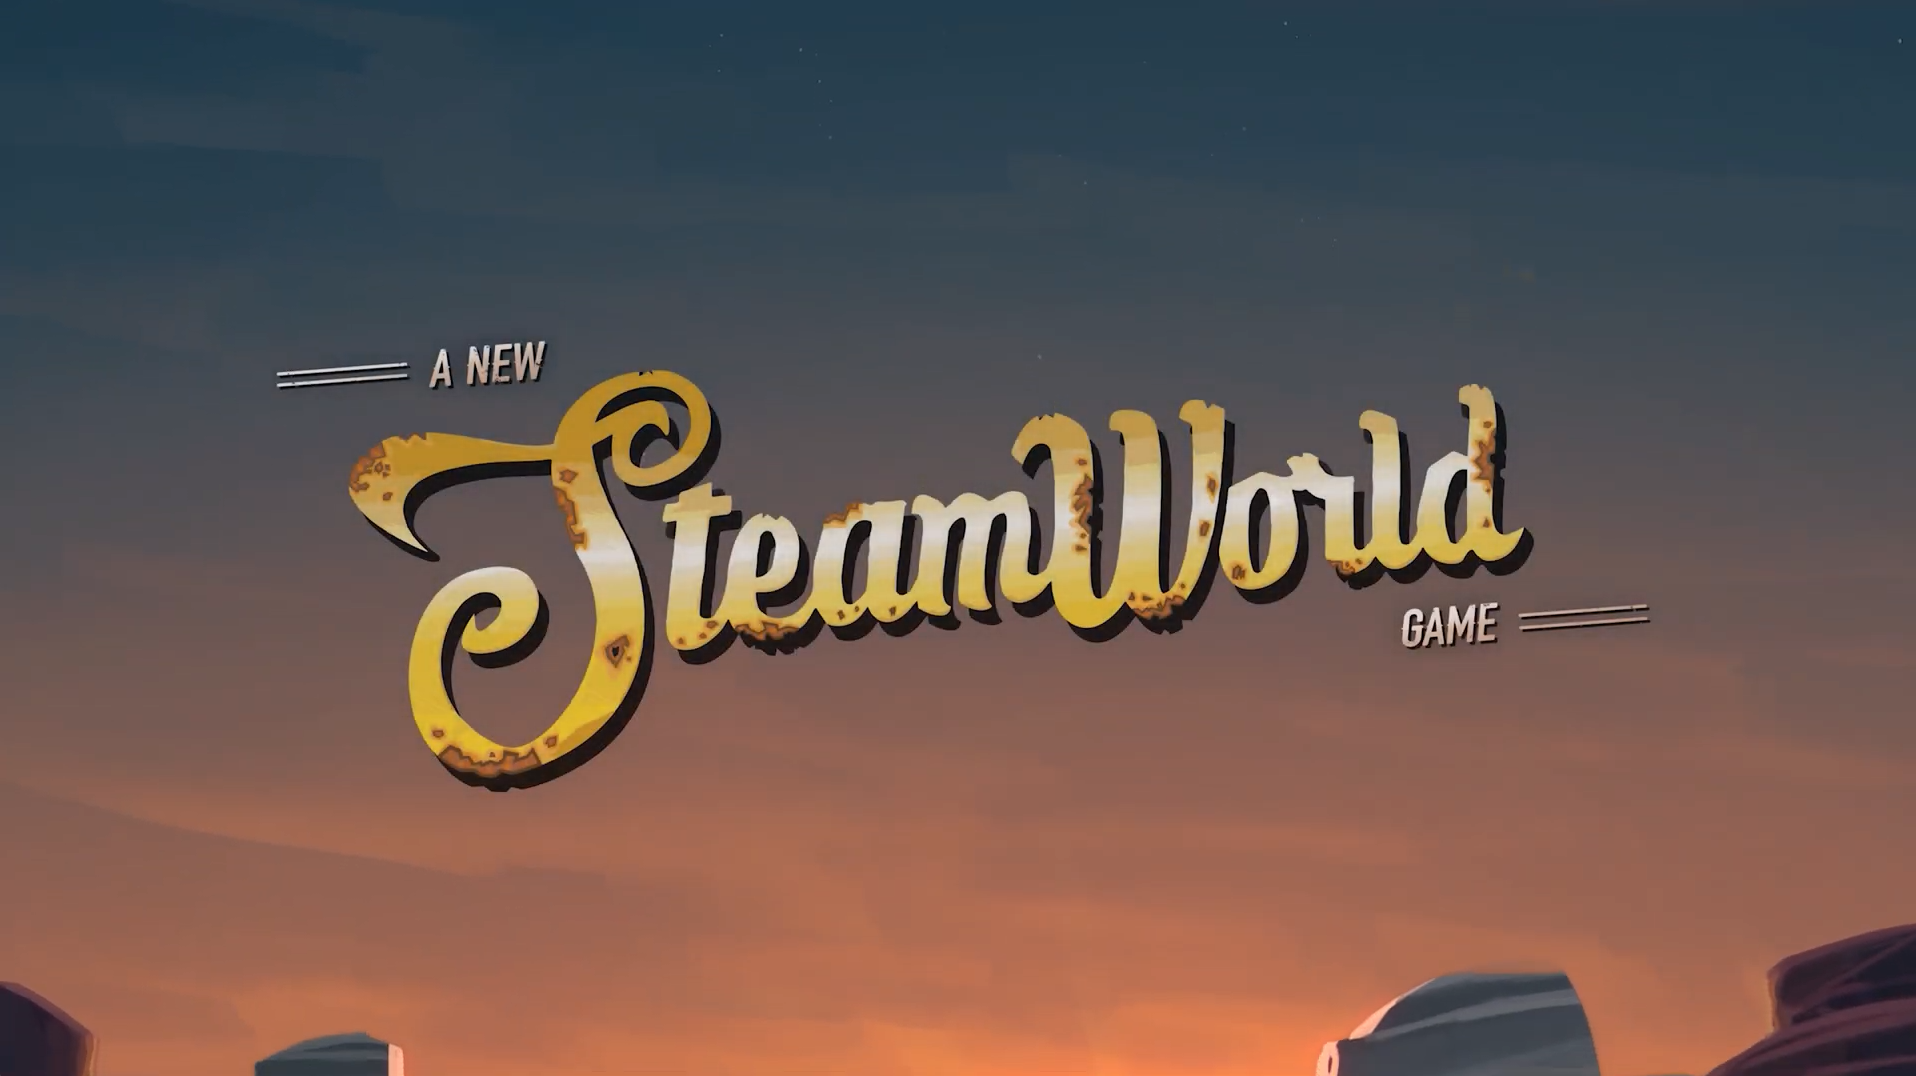 《蒸汽世界建造》預告正式發布試玩版已開放